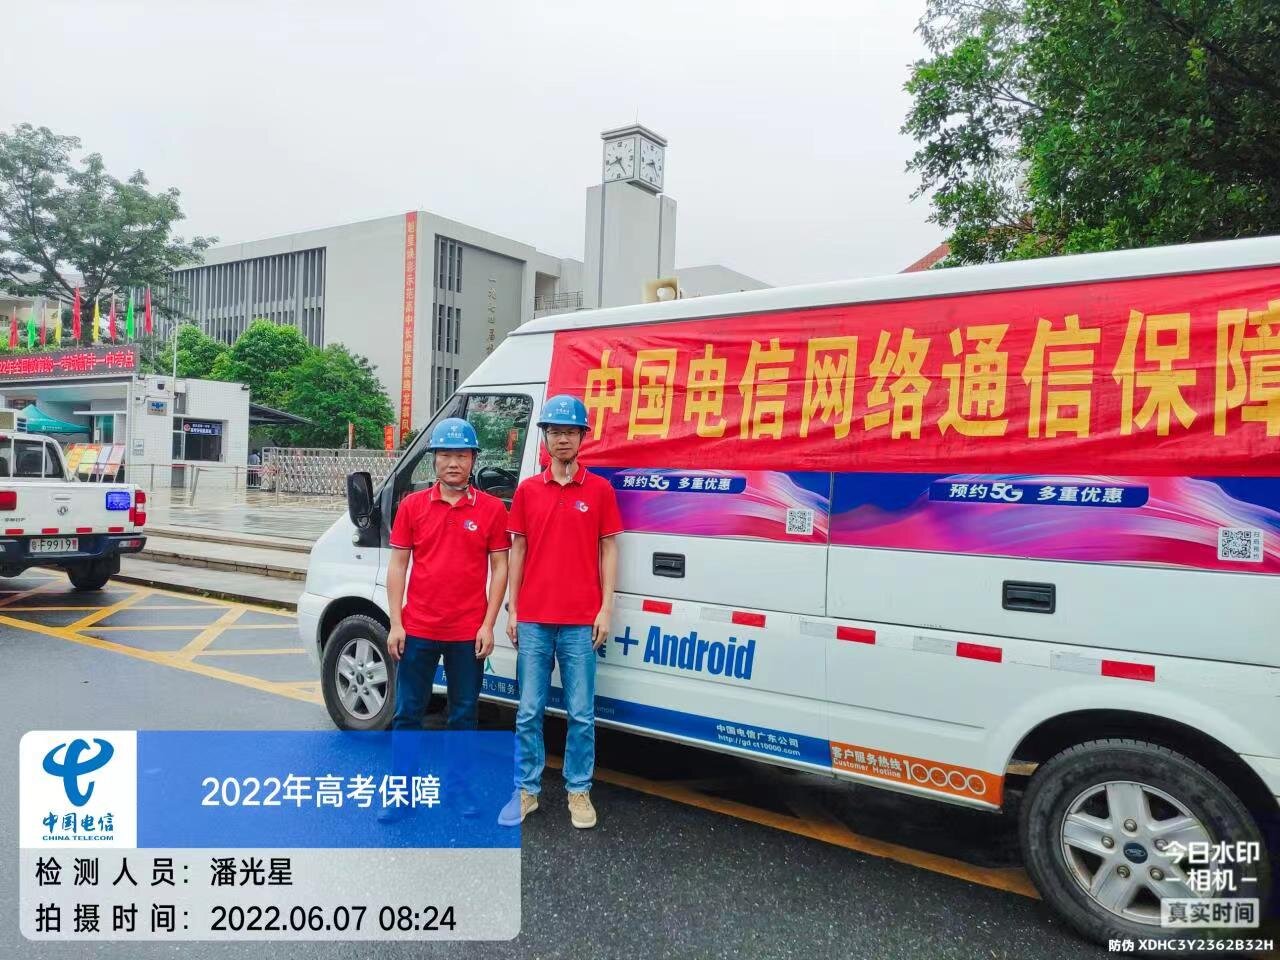 2022年70.2万考生！中国电信为广东高考学子保驾护航插图